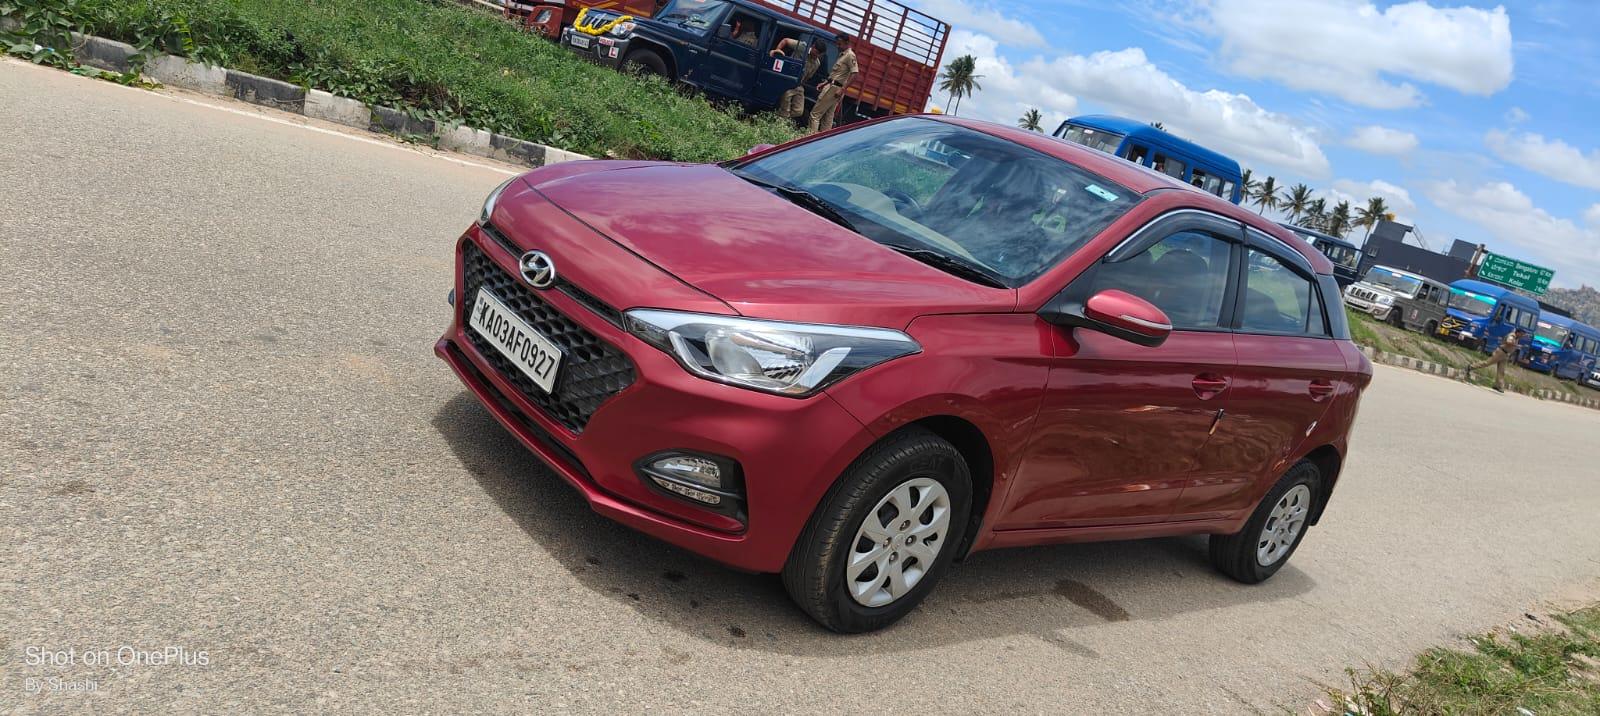 Used 2018 Hyundai Elite i20, Kolar Bangalore